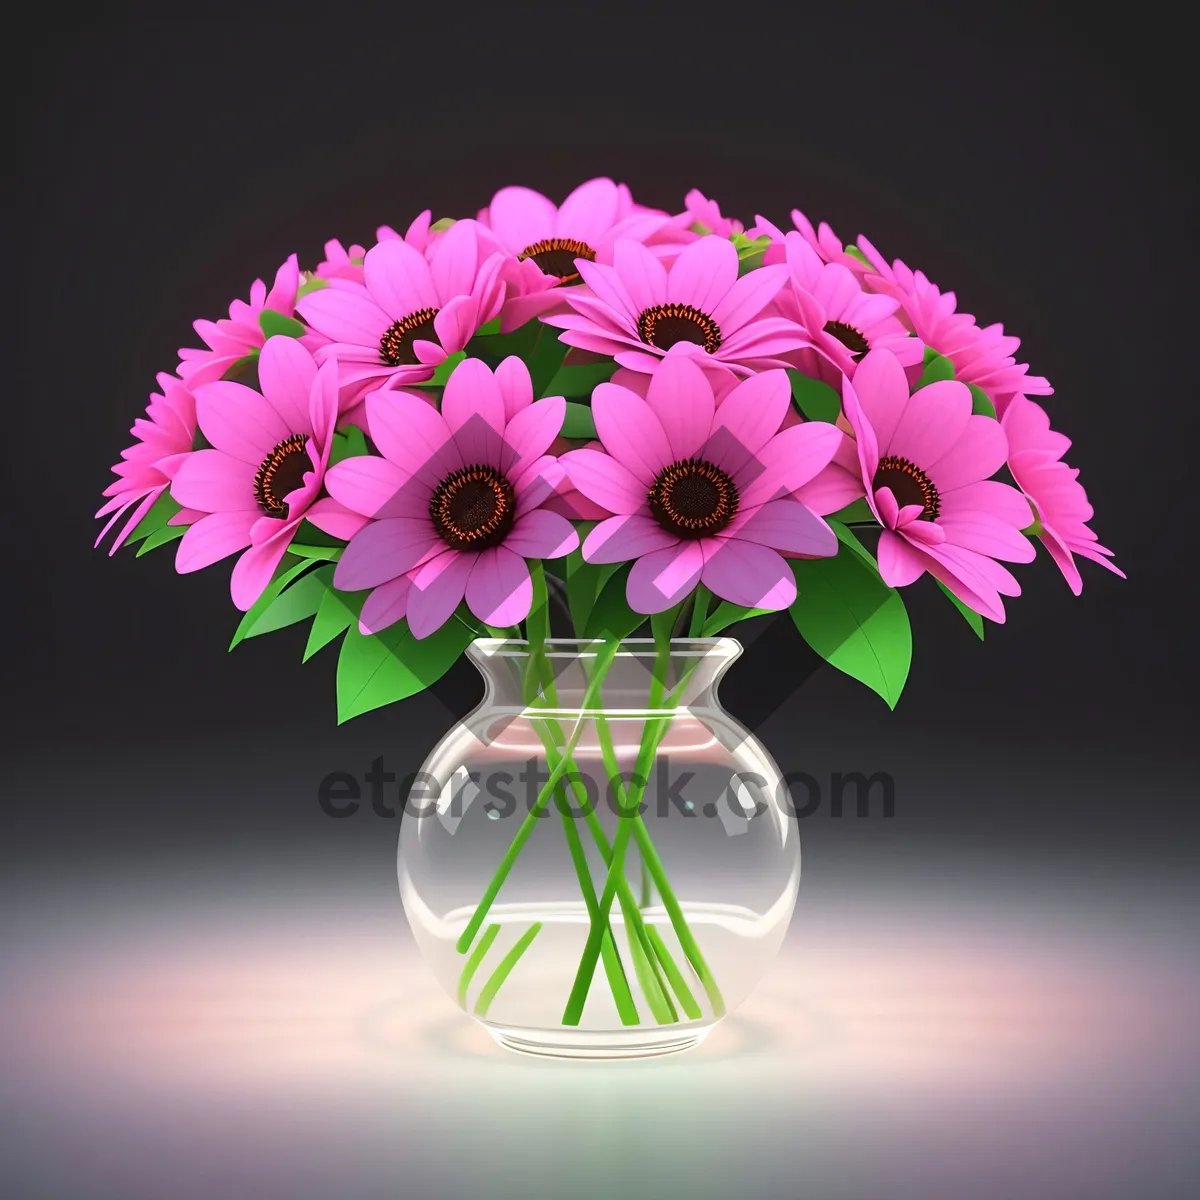 Picture of Floral Gem: Pink Spring Blossom Design